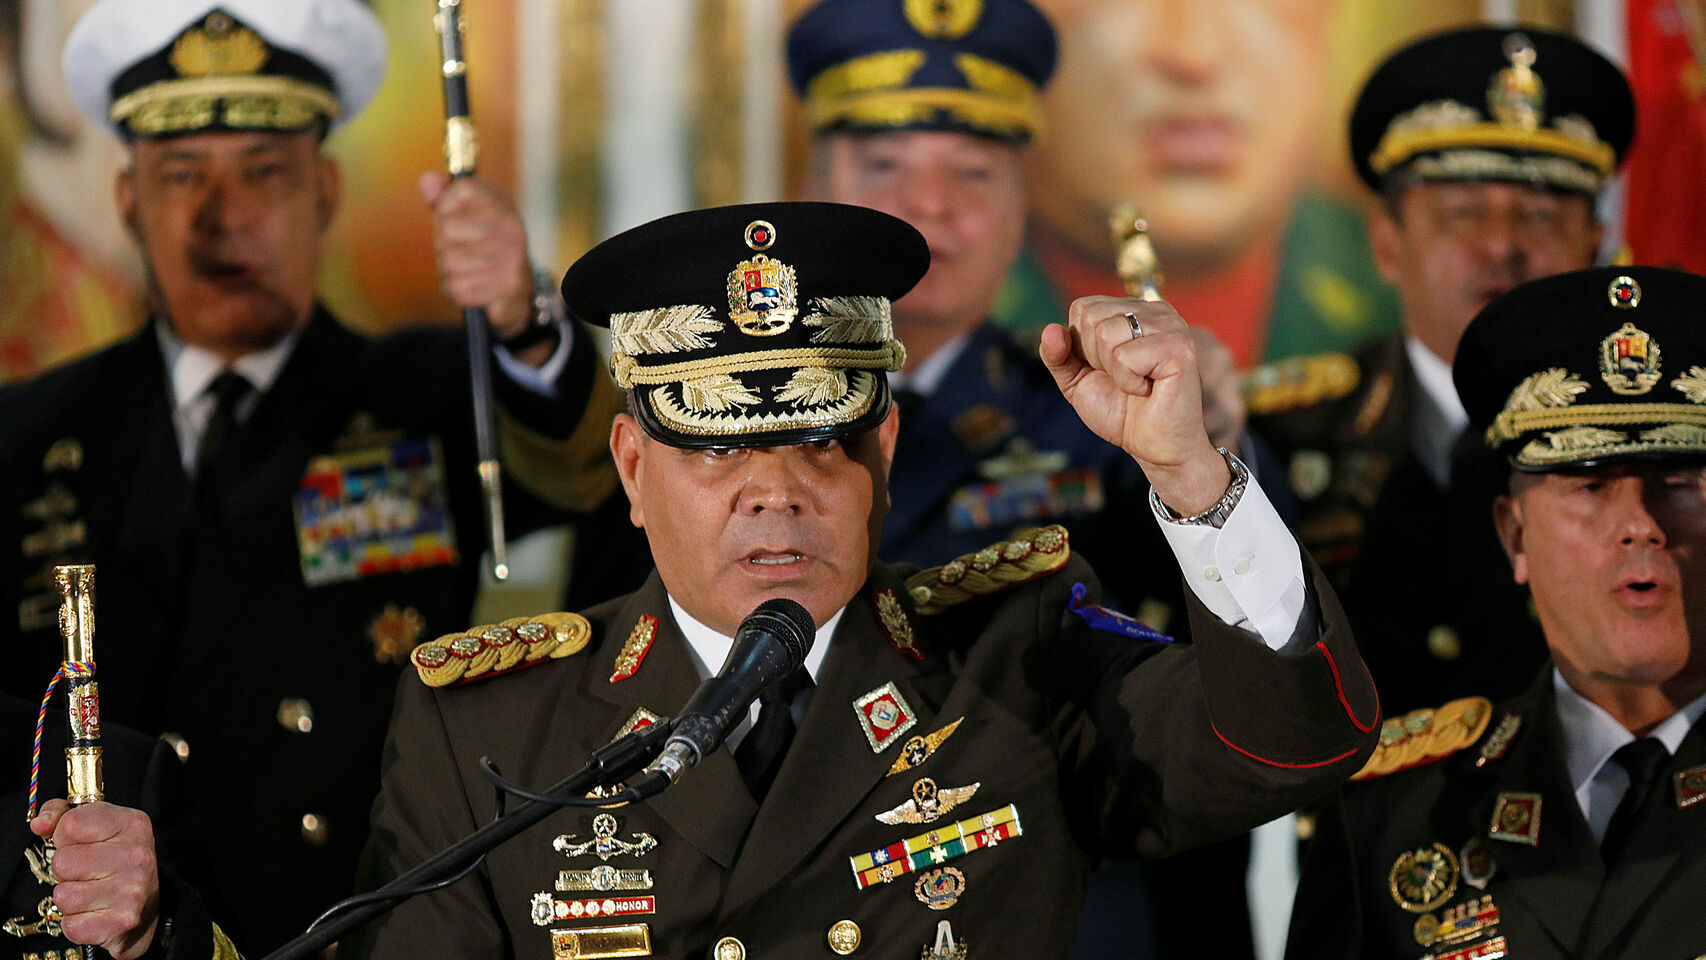 Ministro de la Defensa de Maduro se queda mudo ante incursión estadounidense frente a costas venezolanas